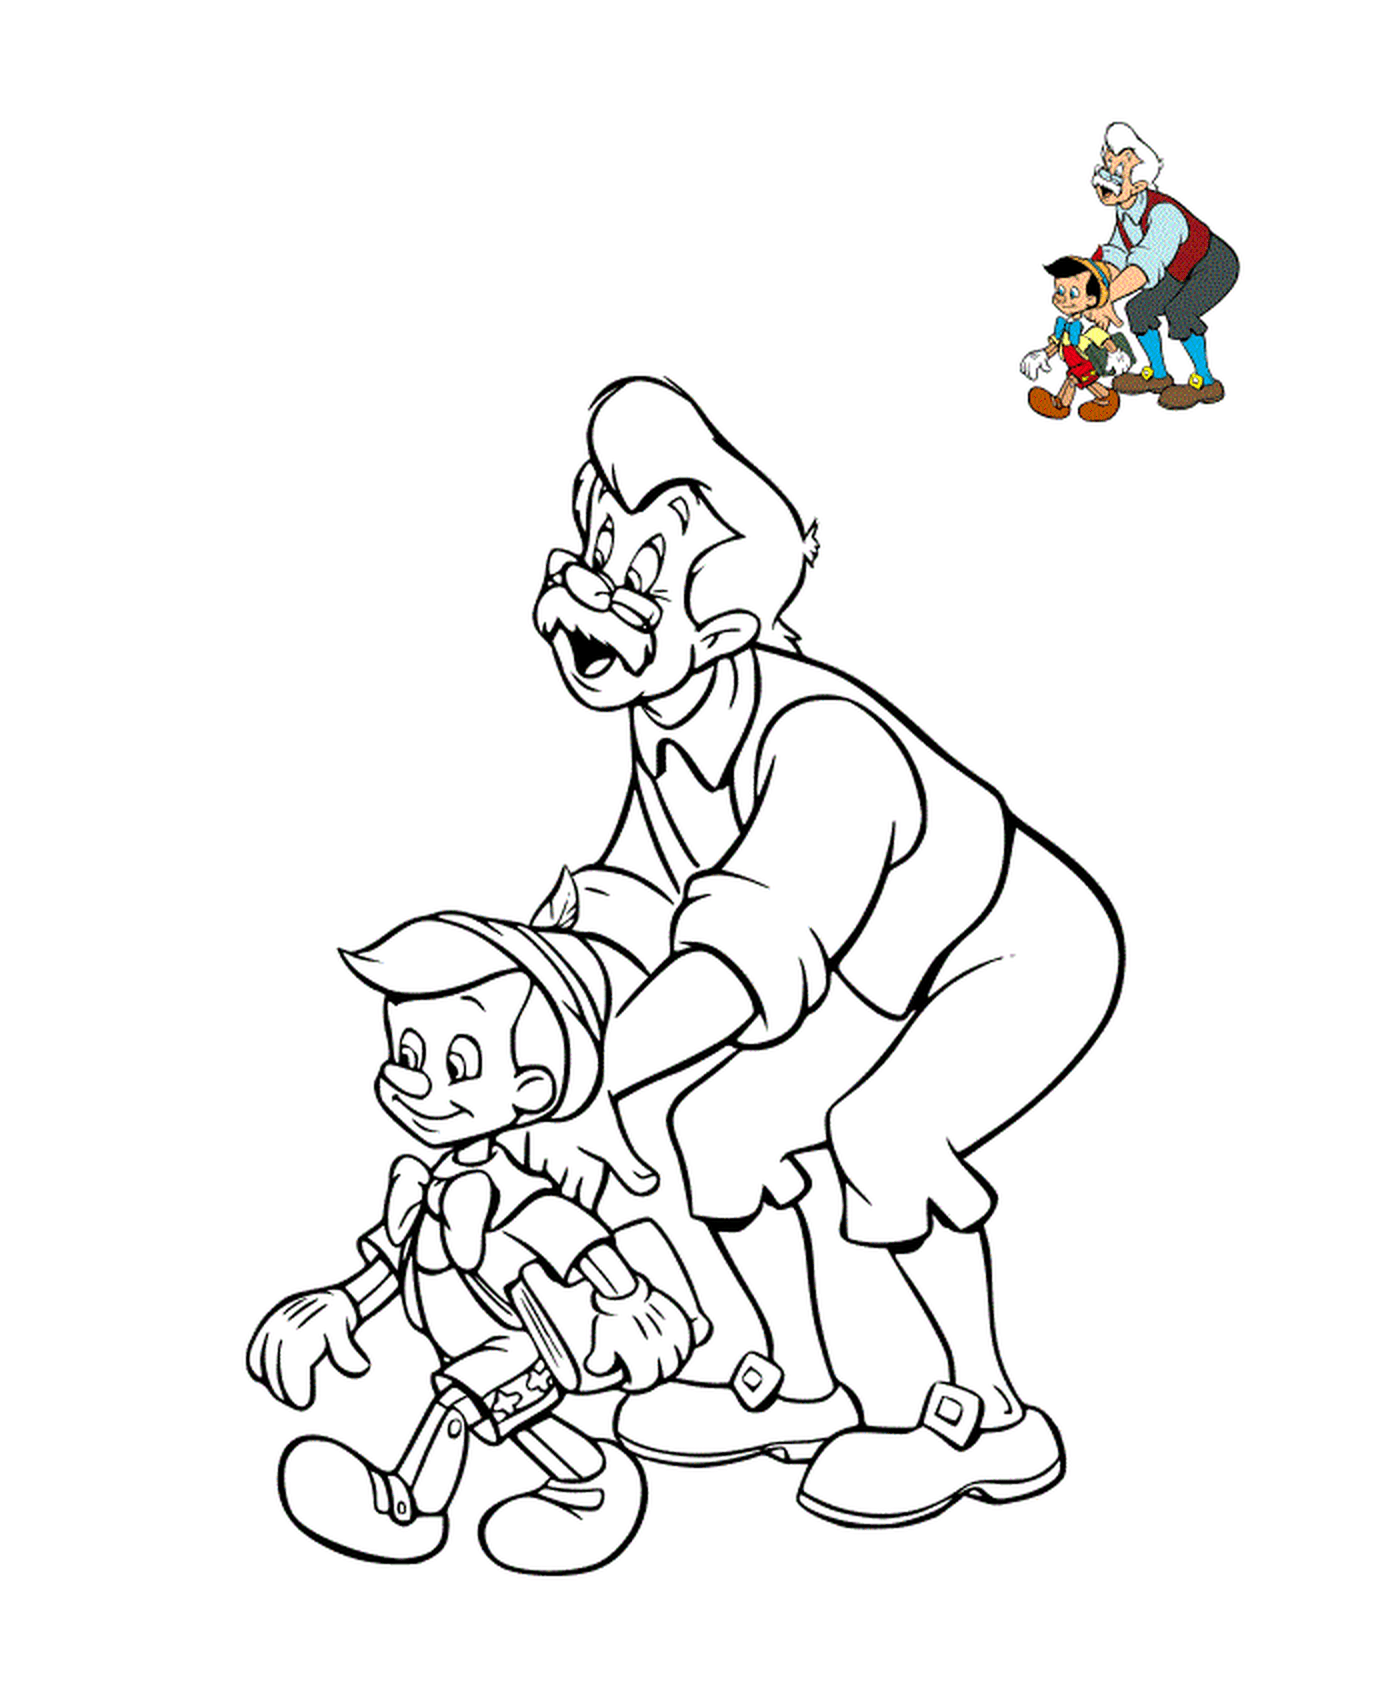  Geppetto con suo figlio, Pinocchio 